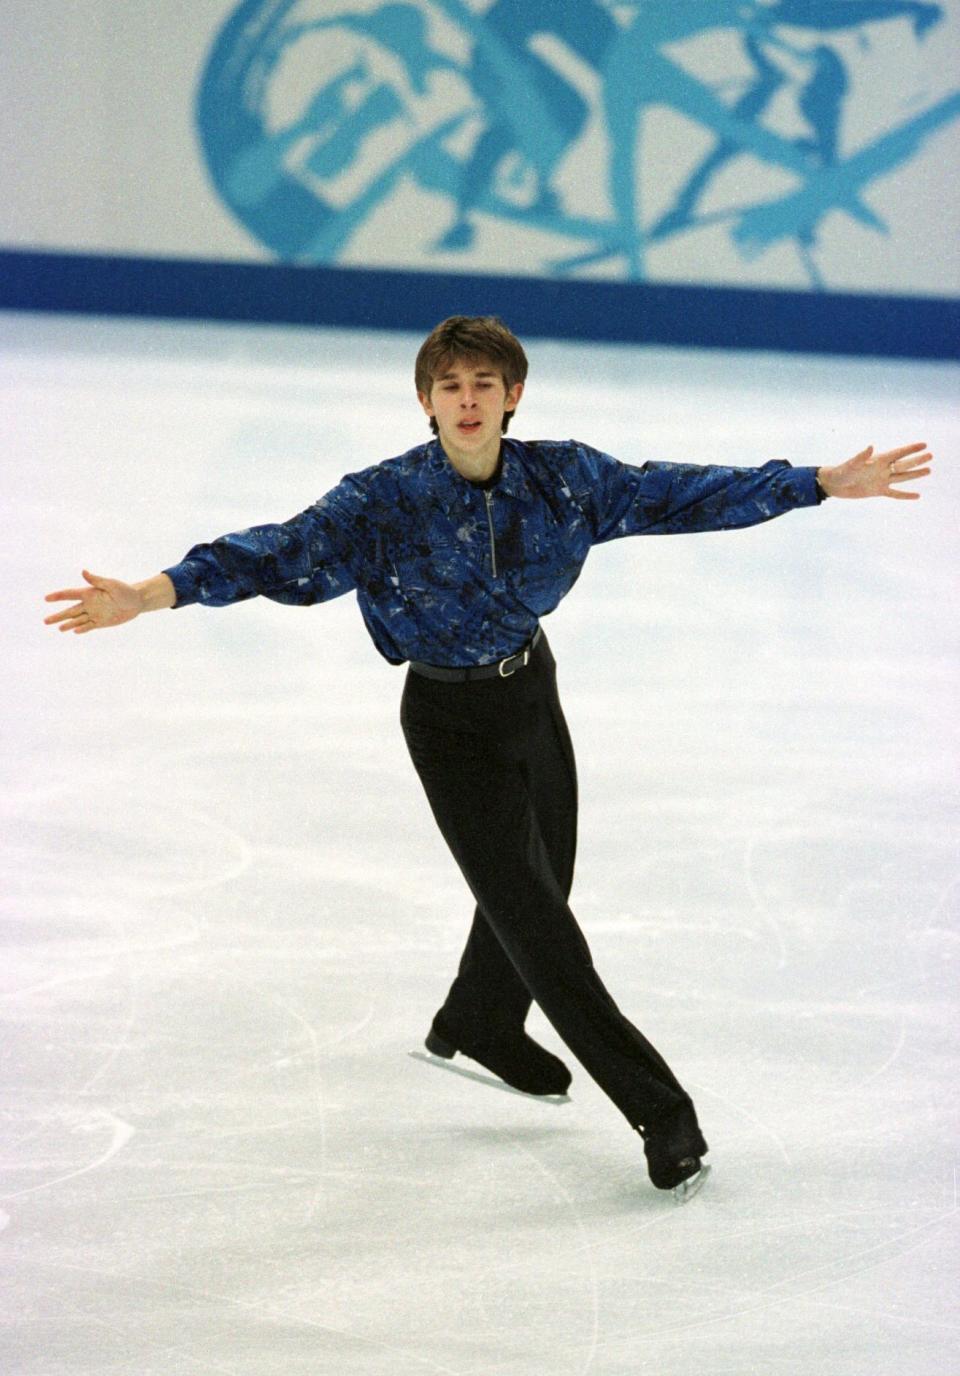 The Estonian skater at the 1998 Winter Olympics in Nagano, Japan.